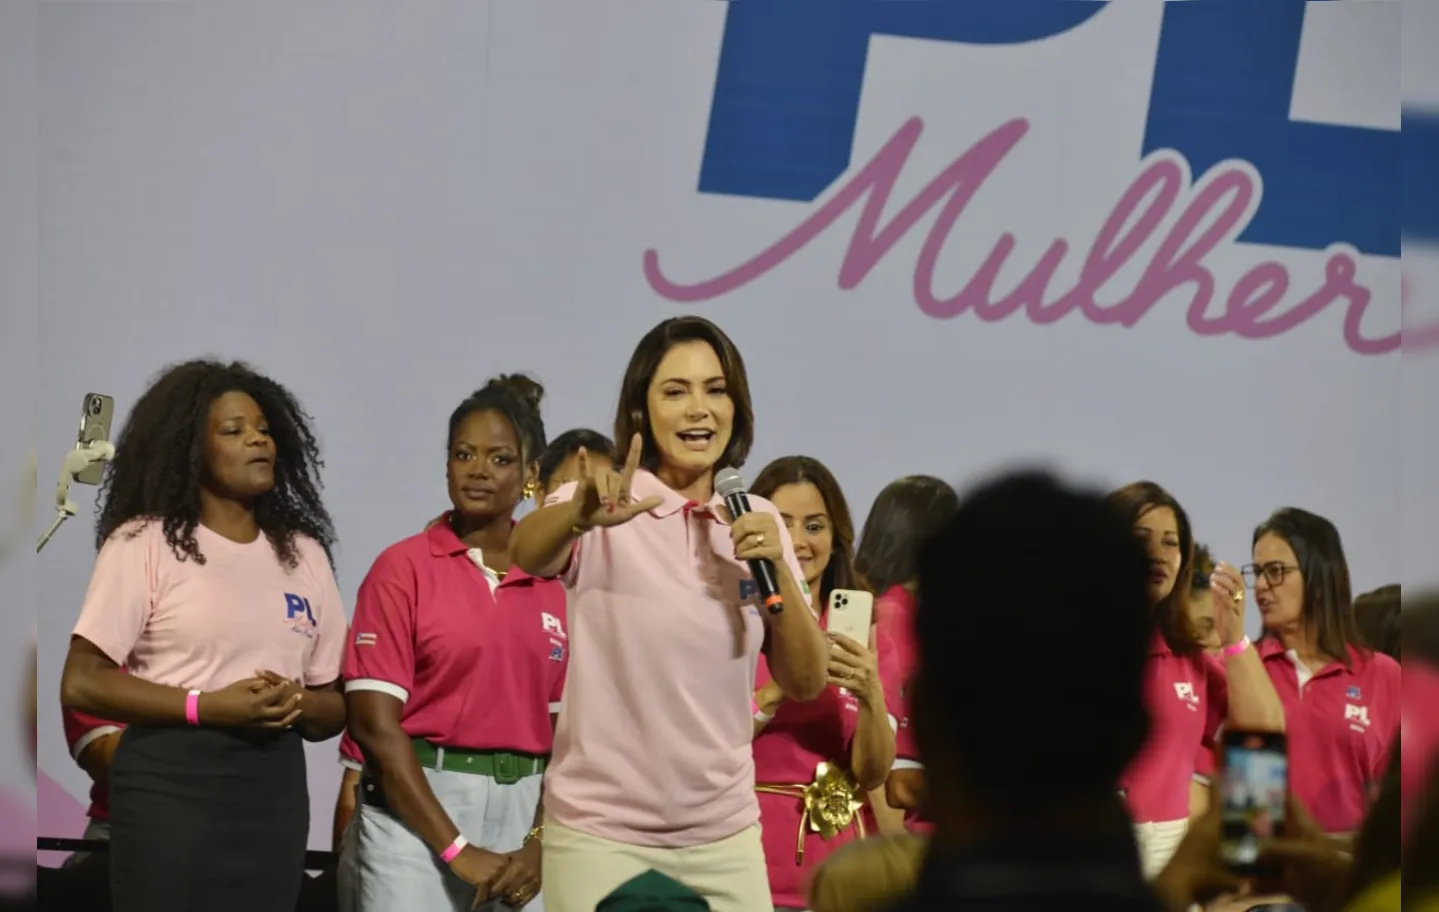 Michelle utilizou do sucesso da música de Ivete Sangalo no Carnaval para tratar de temas defendidos pela direita: "Vamos macetar"